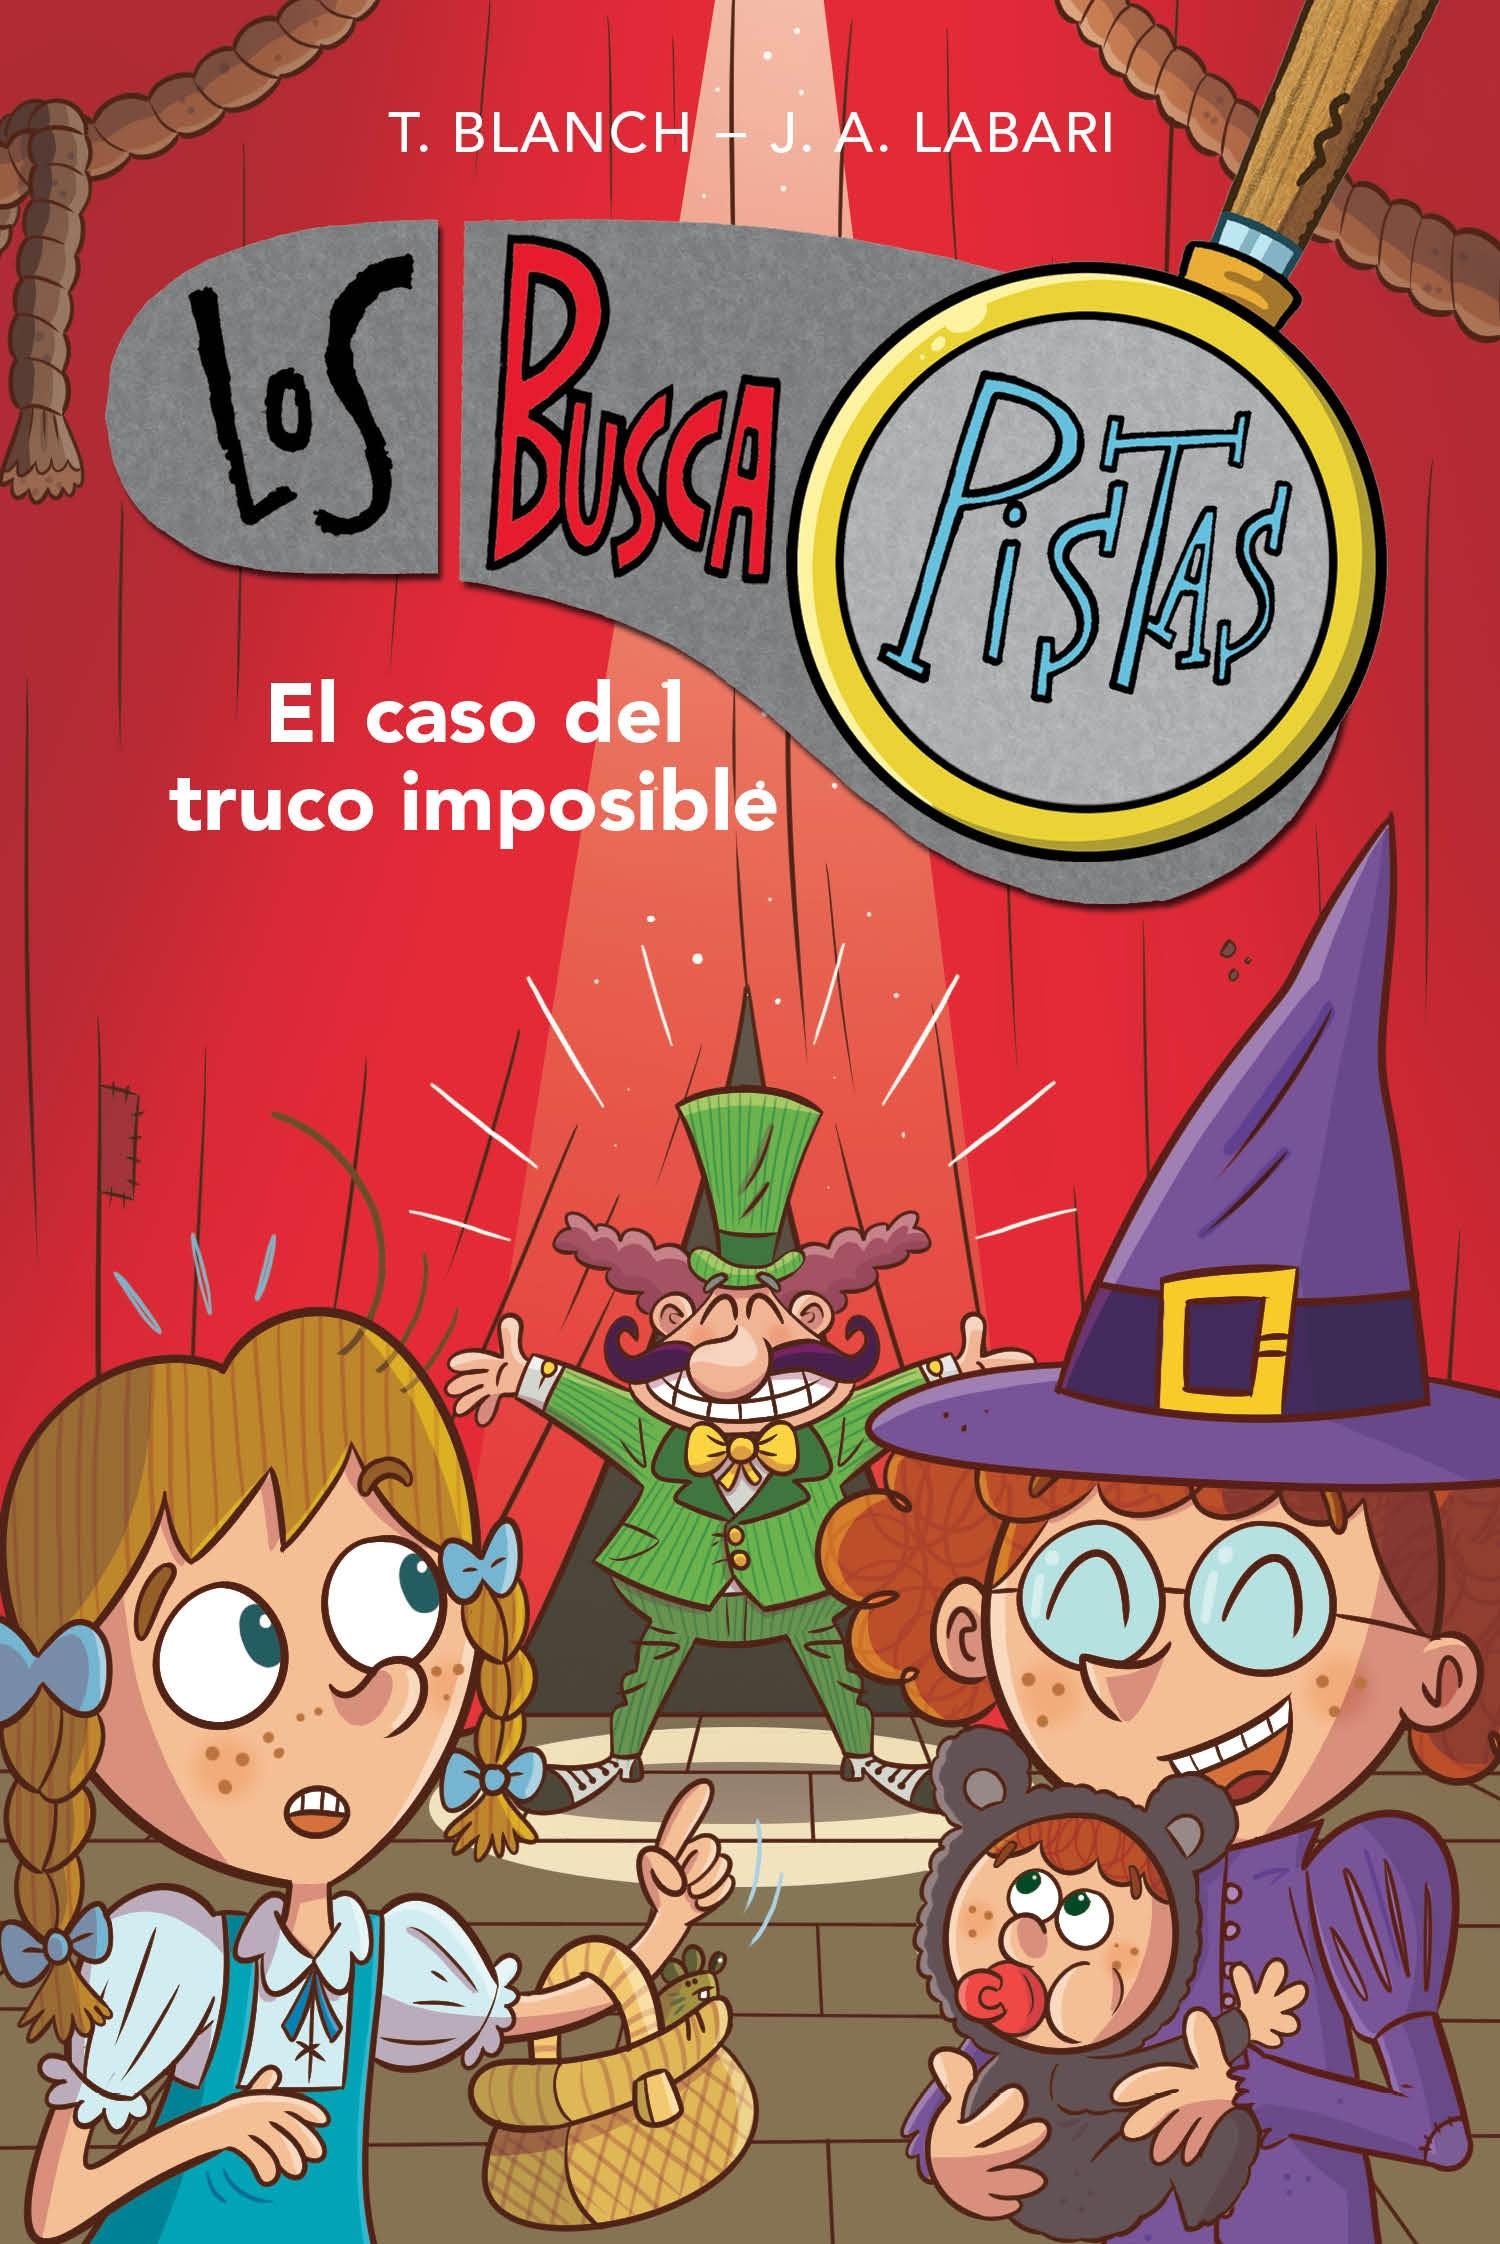 El caso del truco imposible "(Los BuscaPistas - 12)". 